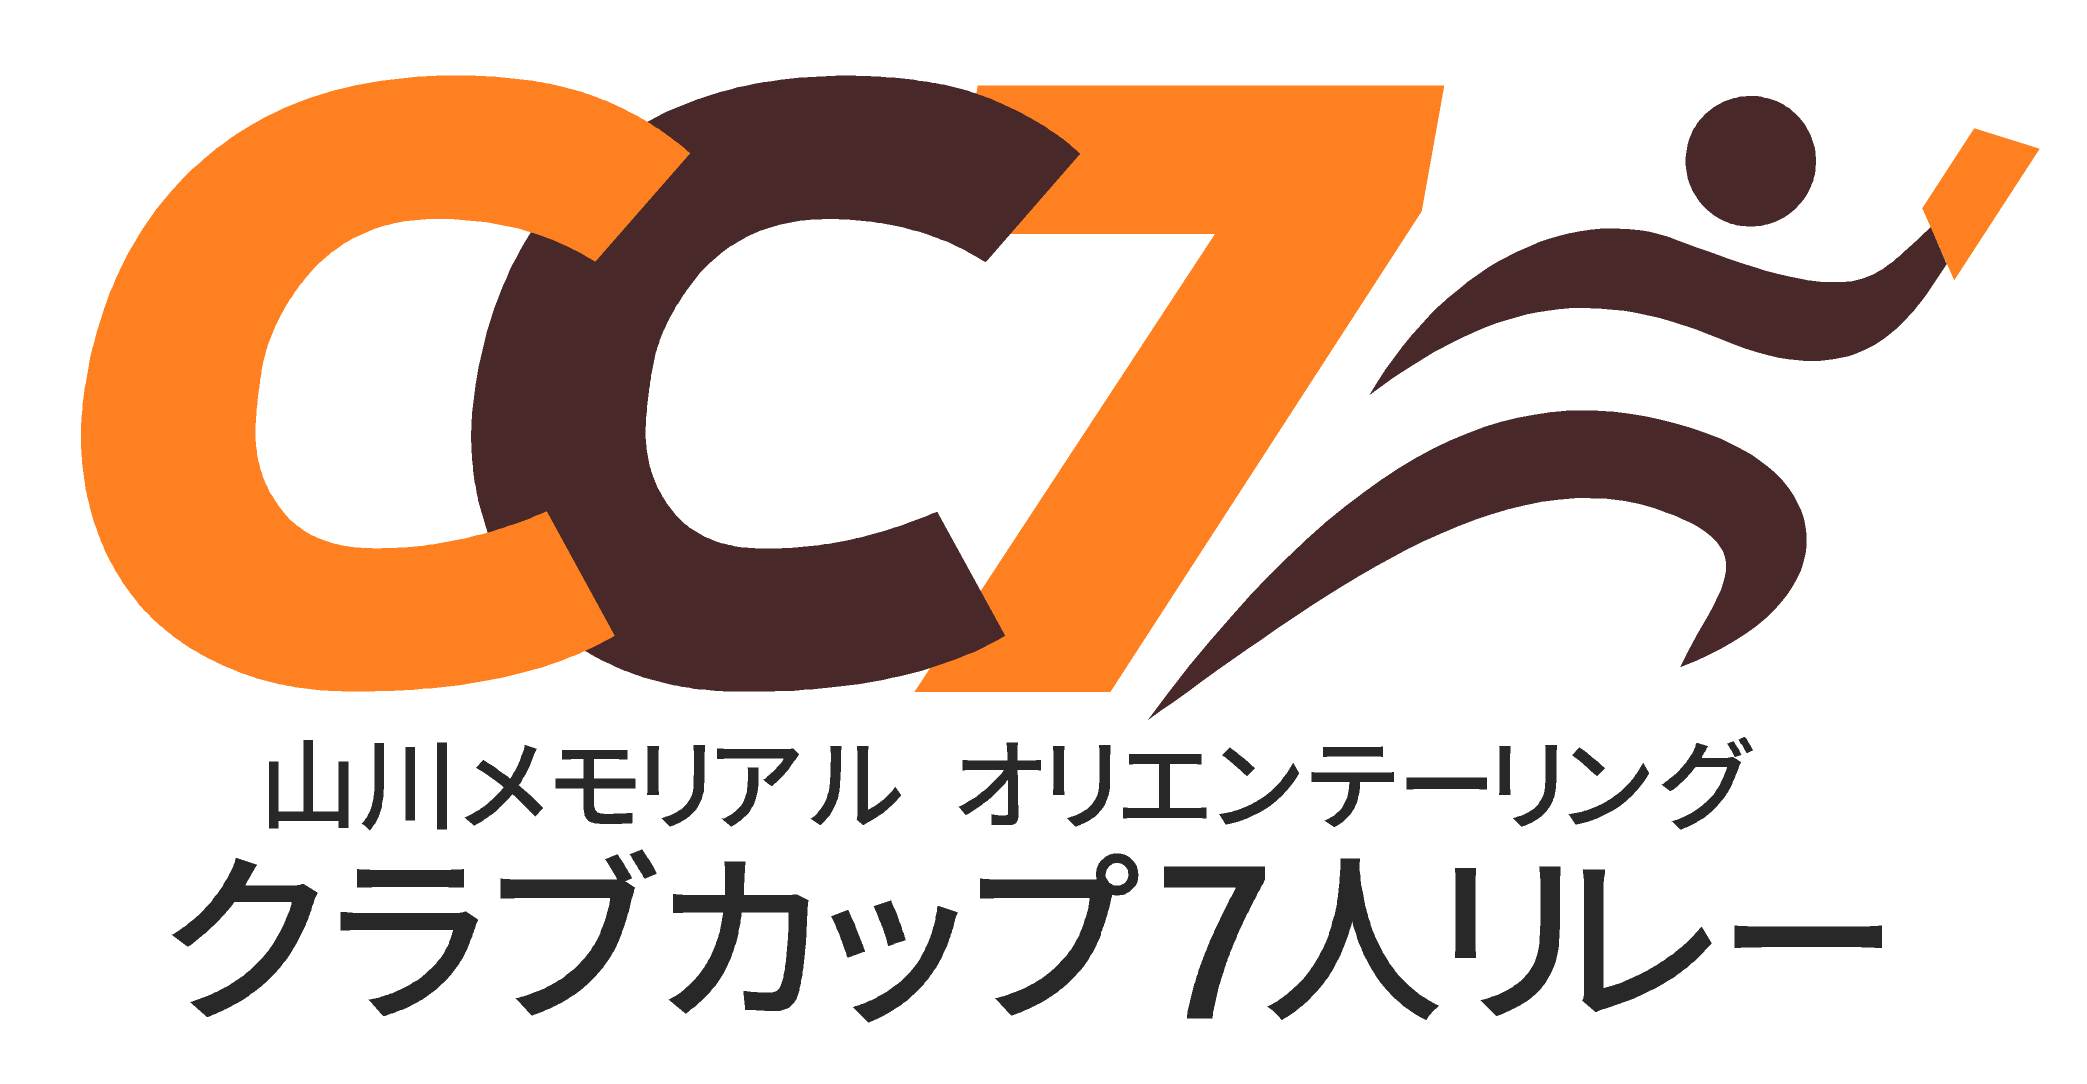 cc7新ロゴ